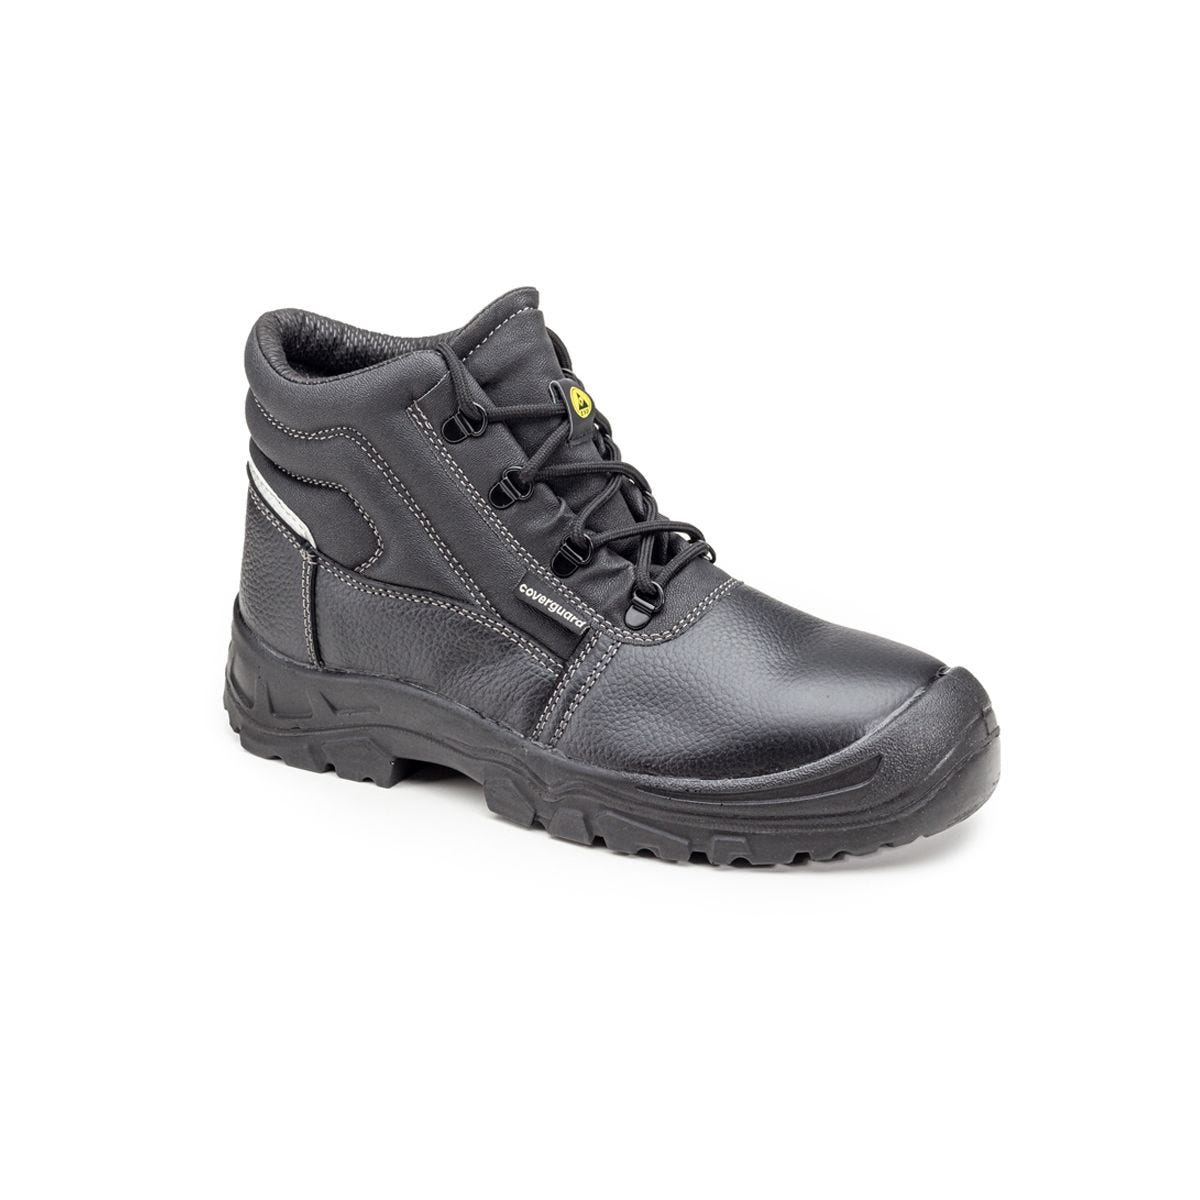 Chaussures de sécurité hautes Azurite II S3 ESD noir - Coverguard - Taille 43 0